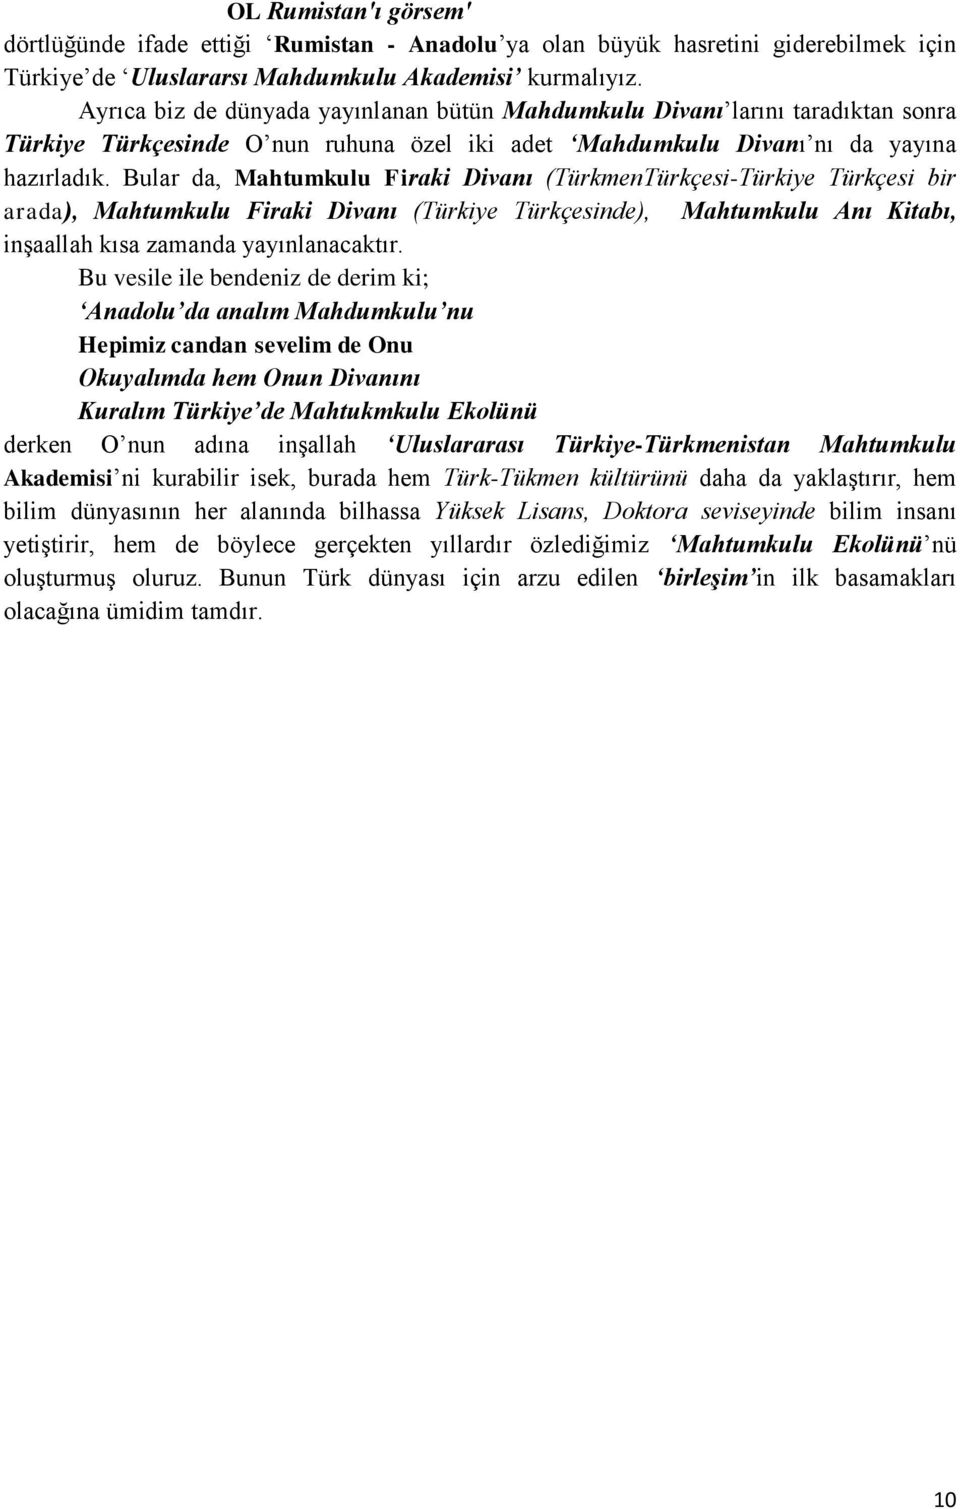 Bular da, Mahtumkulu Firaki Divanı (TürkmenTürkçesi-Türkiye Türkçesi bir arada), Mahtumkulu Firaki Divanı (Türkiye Türkçesinde), Mahtumkulu Anı Kitabı, inşaallah kısa zamanda yayınlanacaktır.